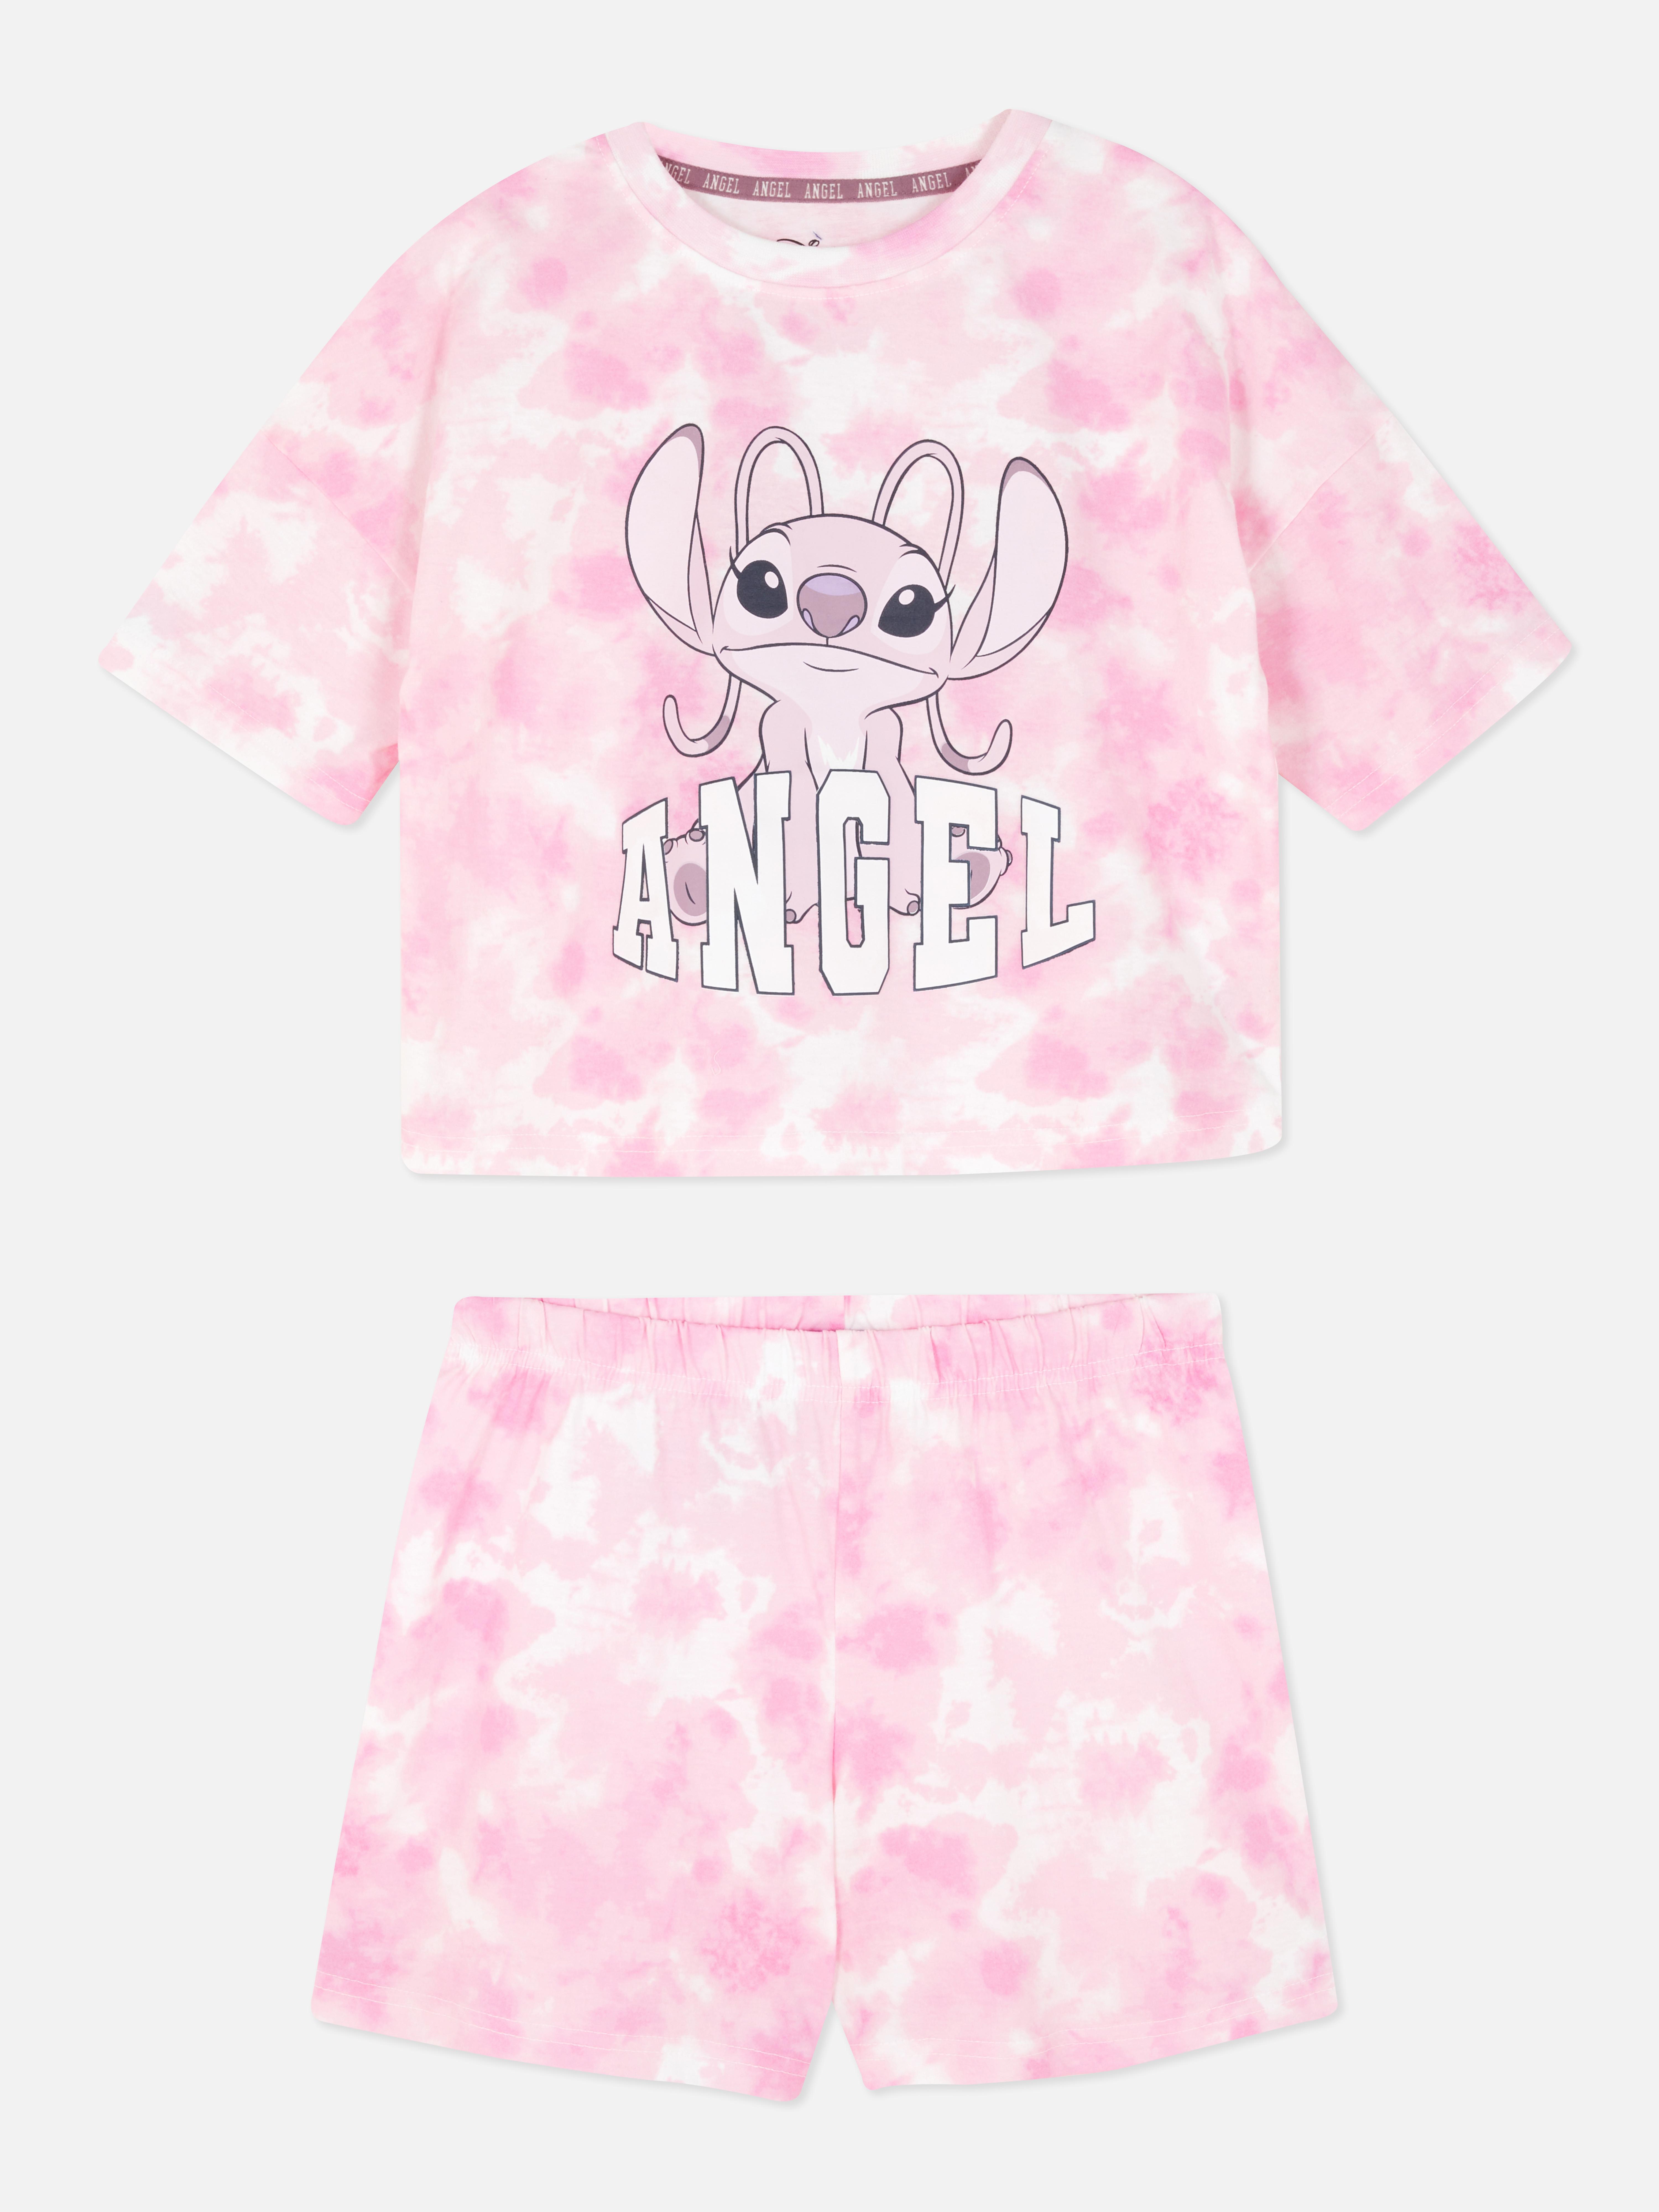 Disney’s Lilo & Stitch Angel Pyjamas